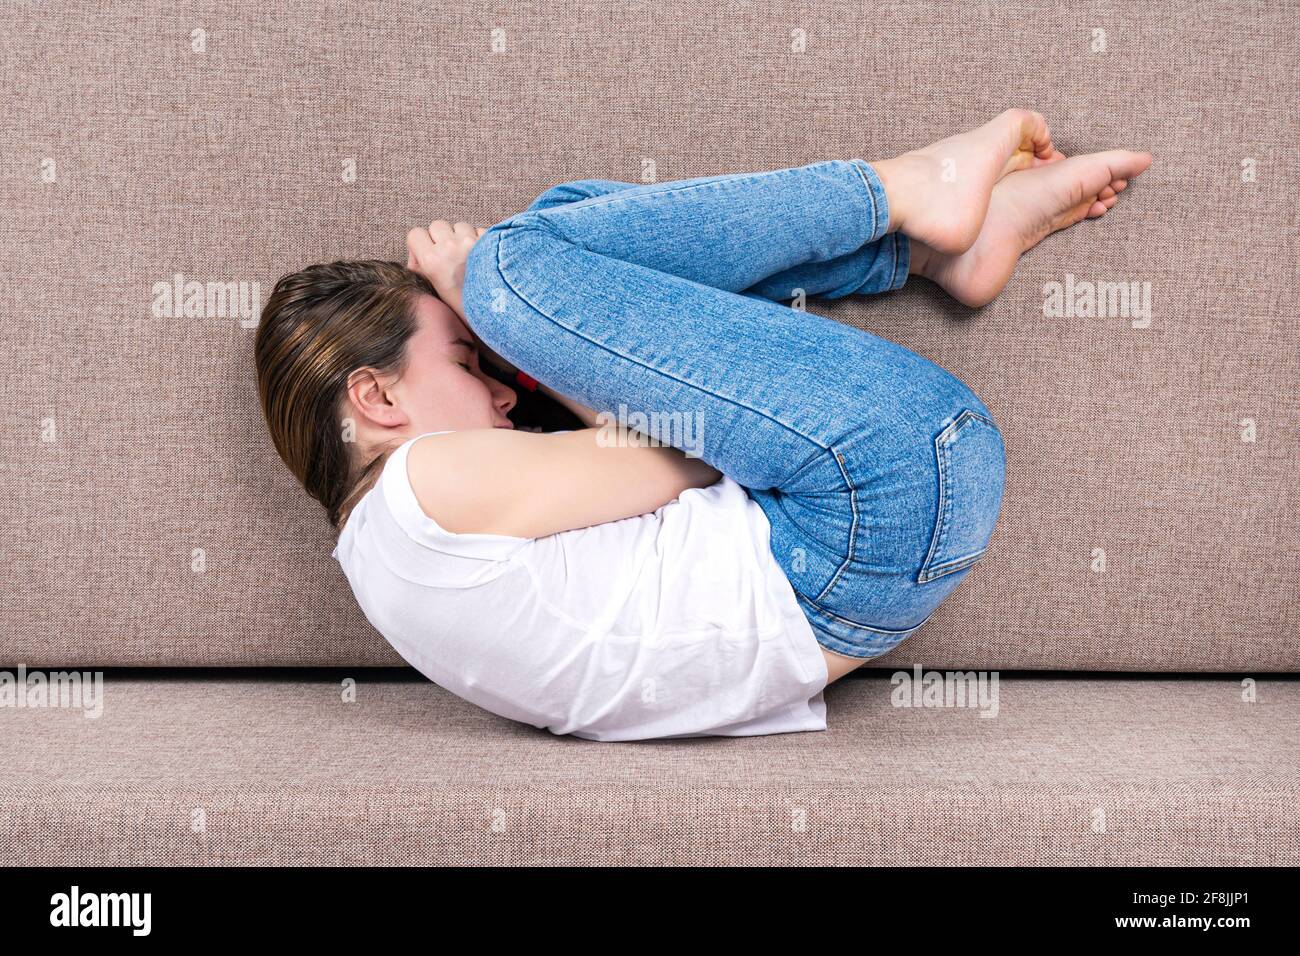 La giovane donna si trova nella postura fetale o embrionale. Vista dall'alto Foto Stock